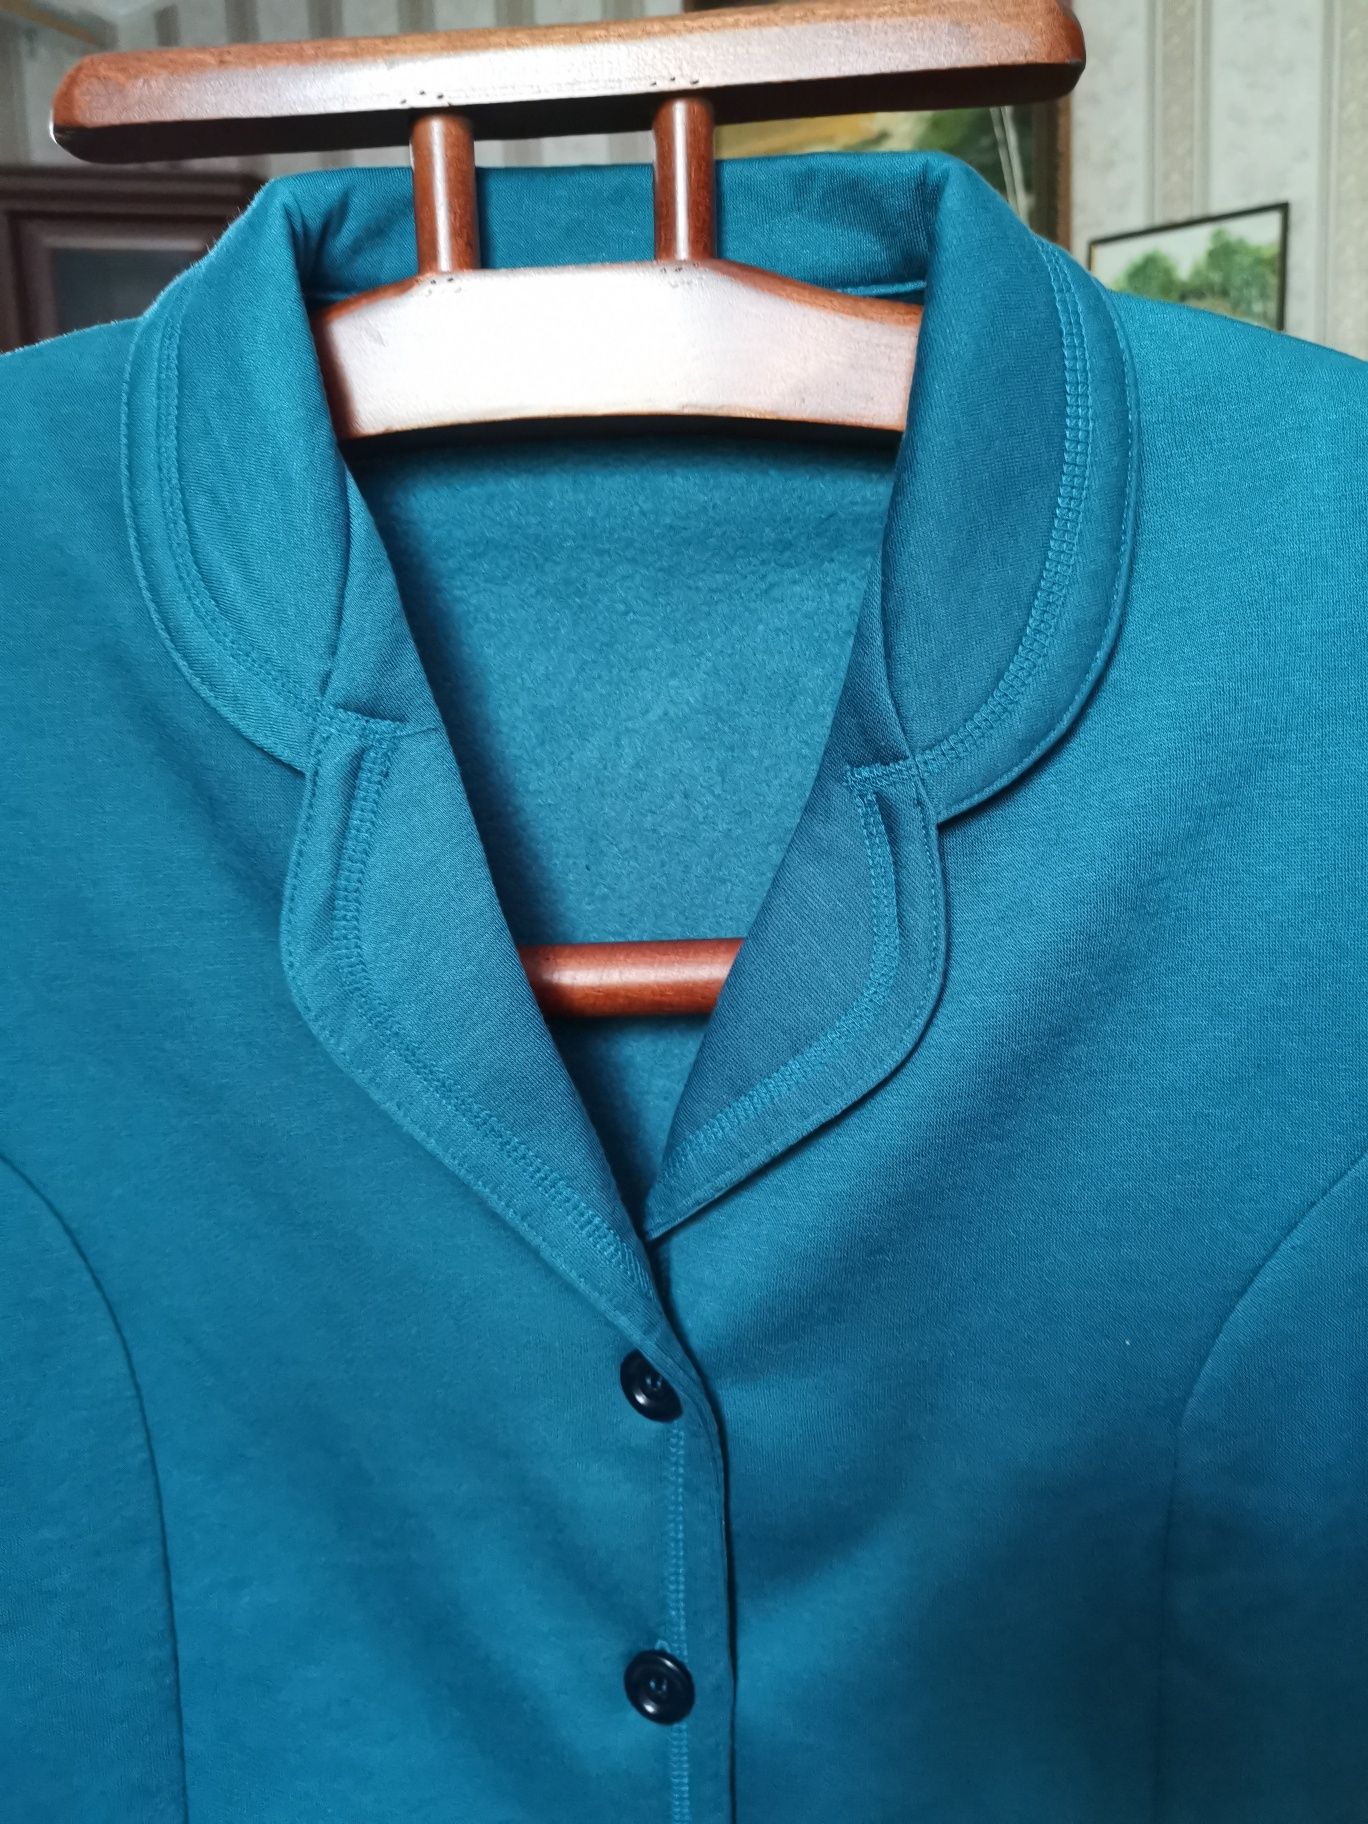 Пиджак на флисе 52-54 размер, Damart, Великобритания